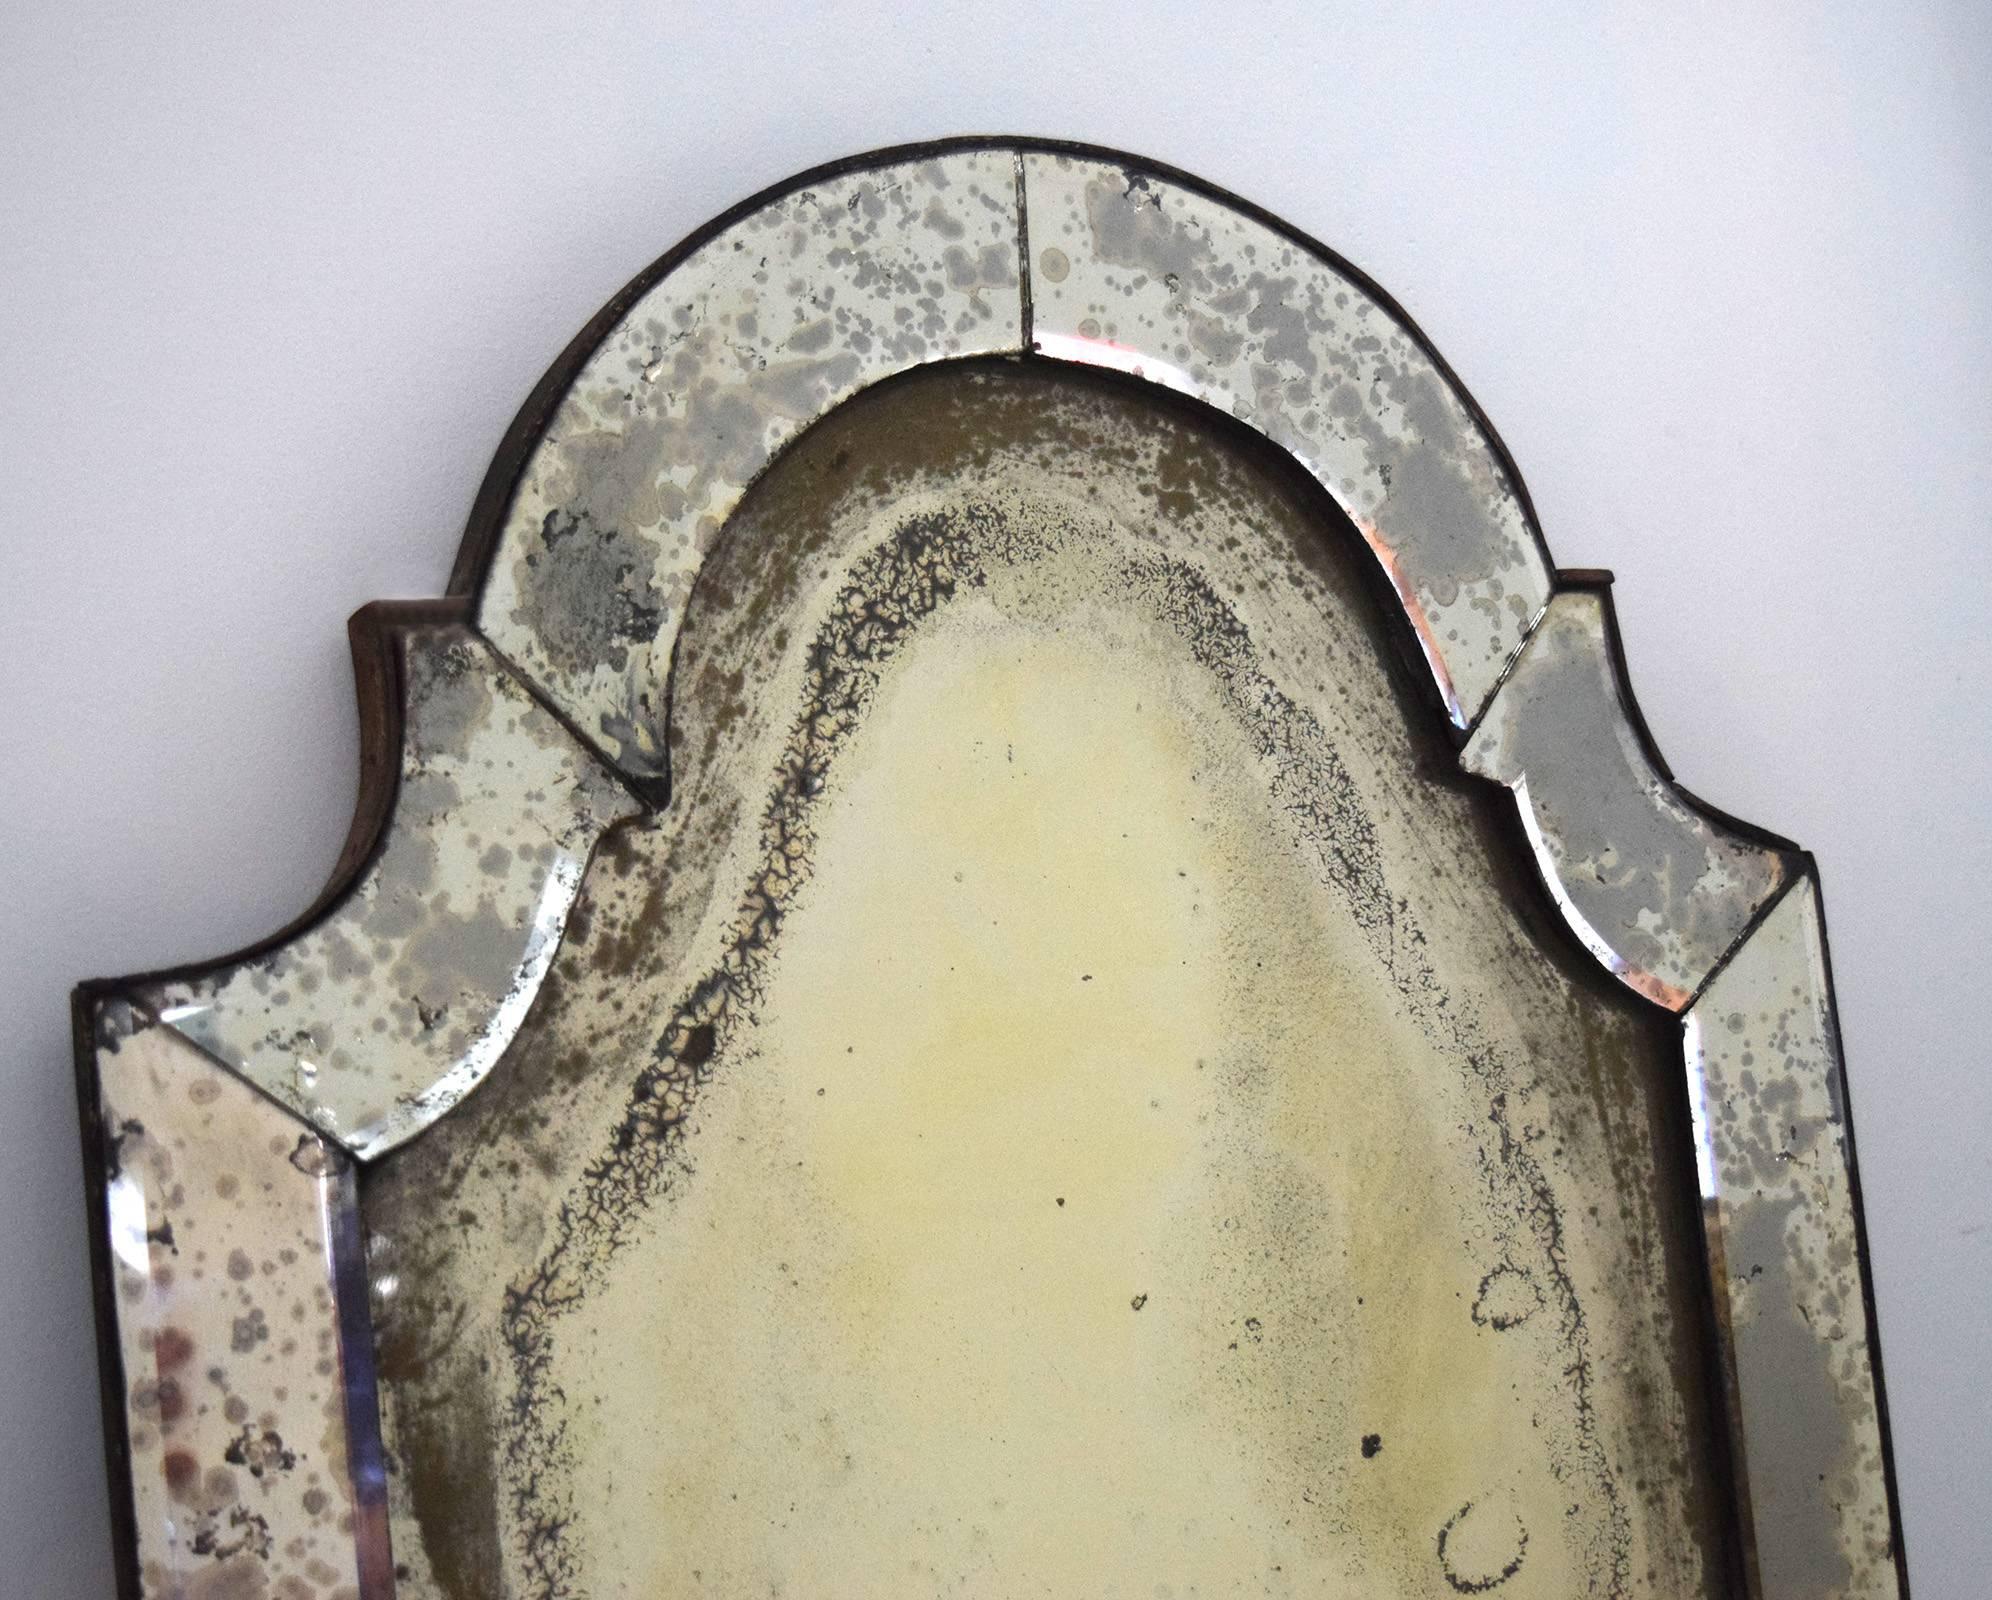 Dieser charmante Spiegel mit Spiegelrahmen stammt aus dem frühen 18. Jahrhundert, ist wahrscheinlich deutsch oder baltisch und zeigt den englischen Einfluss unter den Hansestädten. Wie durch ein Wunder sind alle originalen Spiegelplatten erhalten